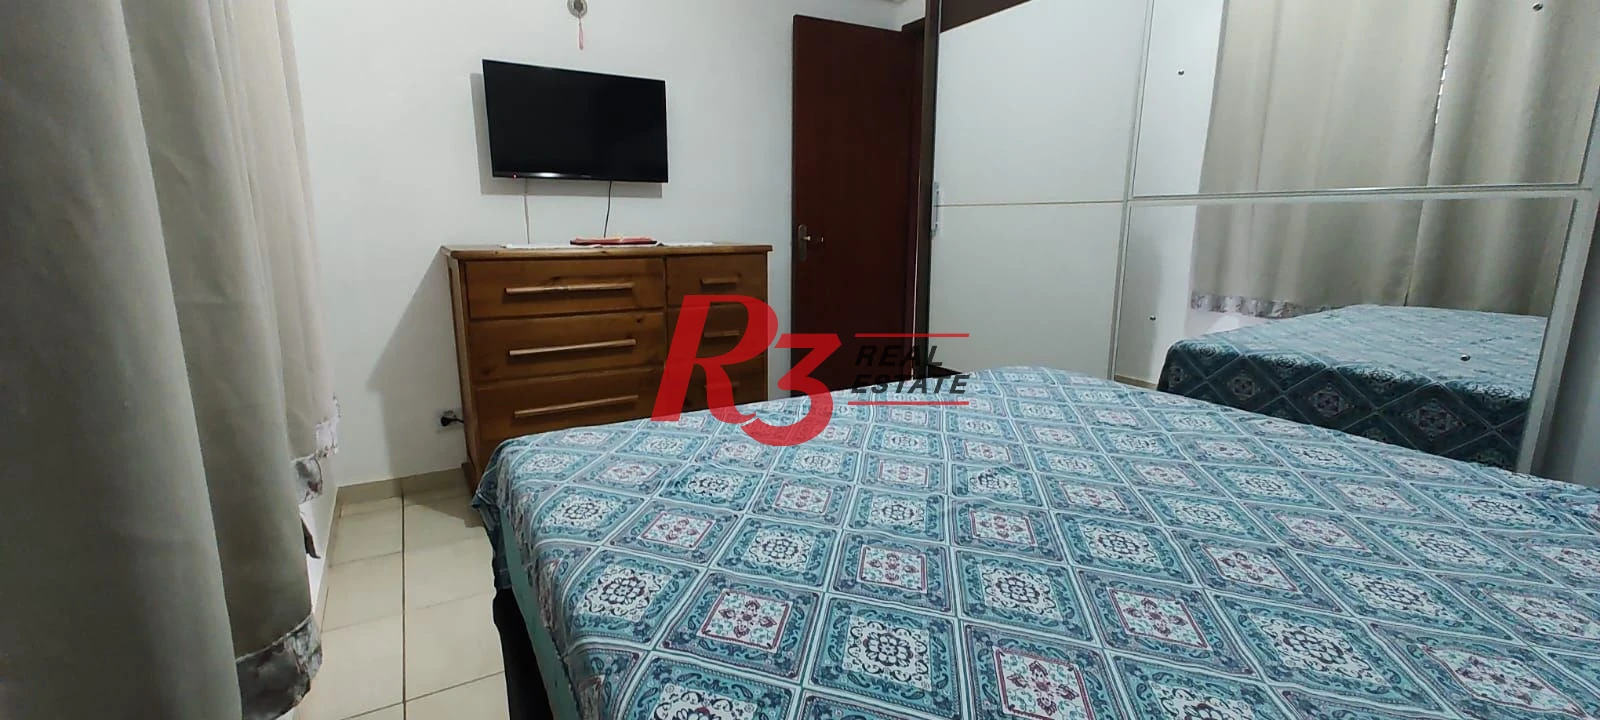 Apartamento à venda, 94 m² por R$ 240.000,00 - Vila Nossa Senhora de Fátima - São Vicente/SP